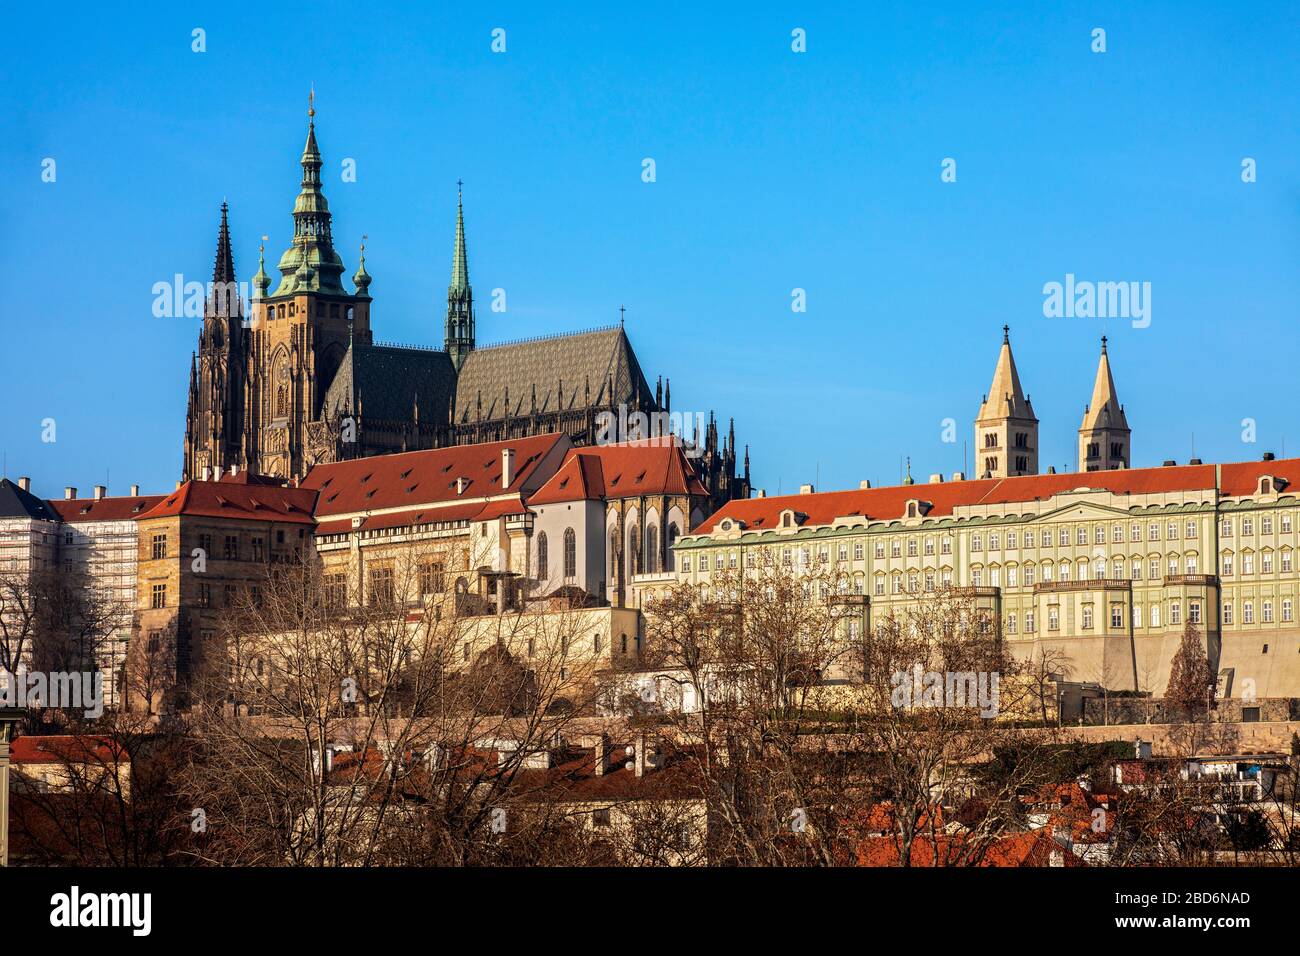 Blick auf die Prager Burg (Hradschin), Prag, Tschechische Republik Banque D'Images